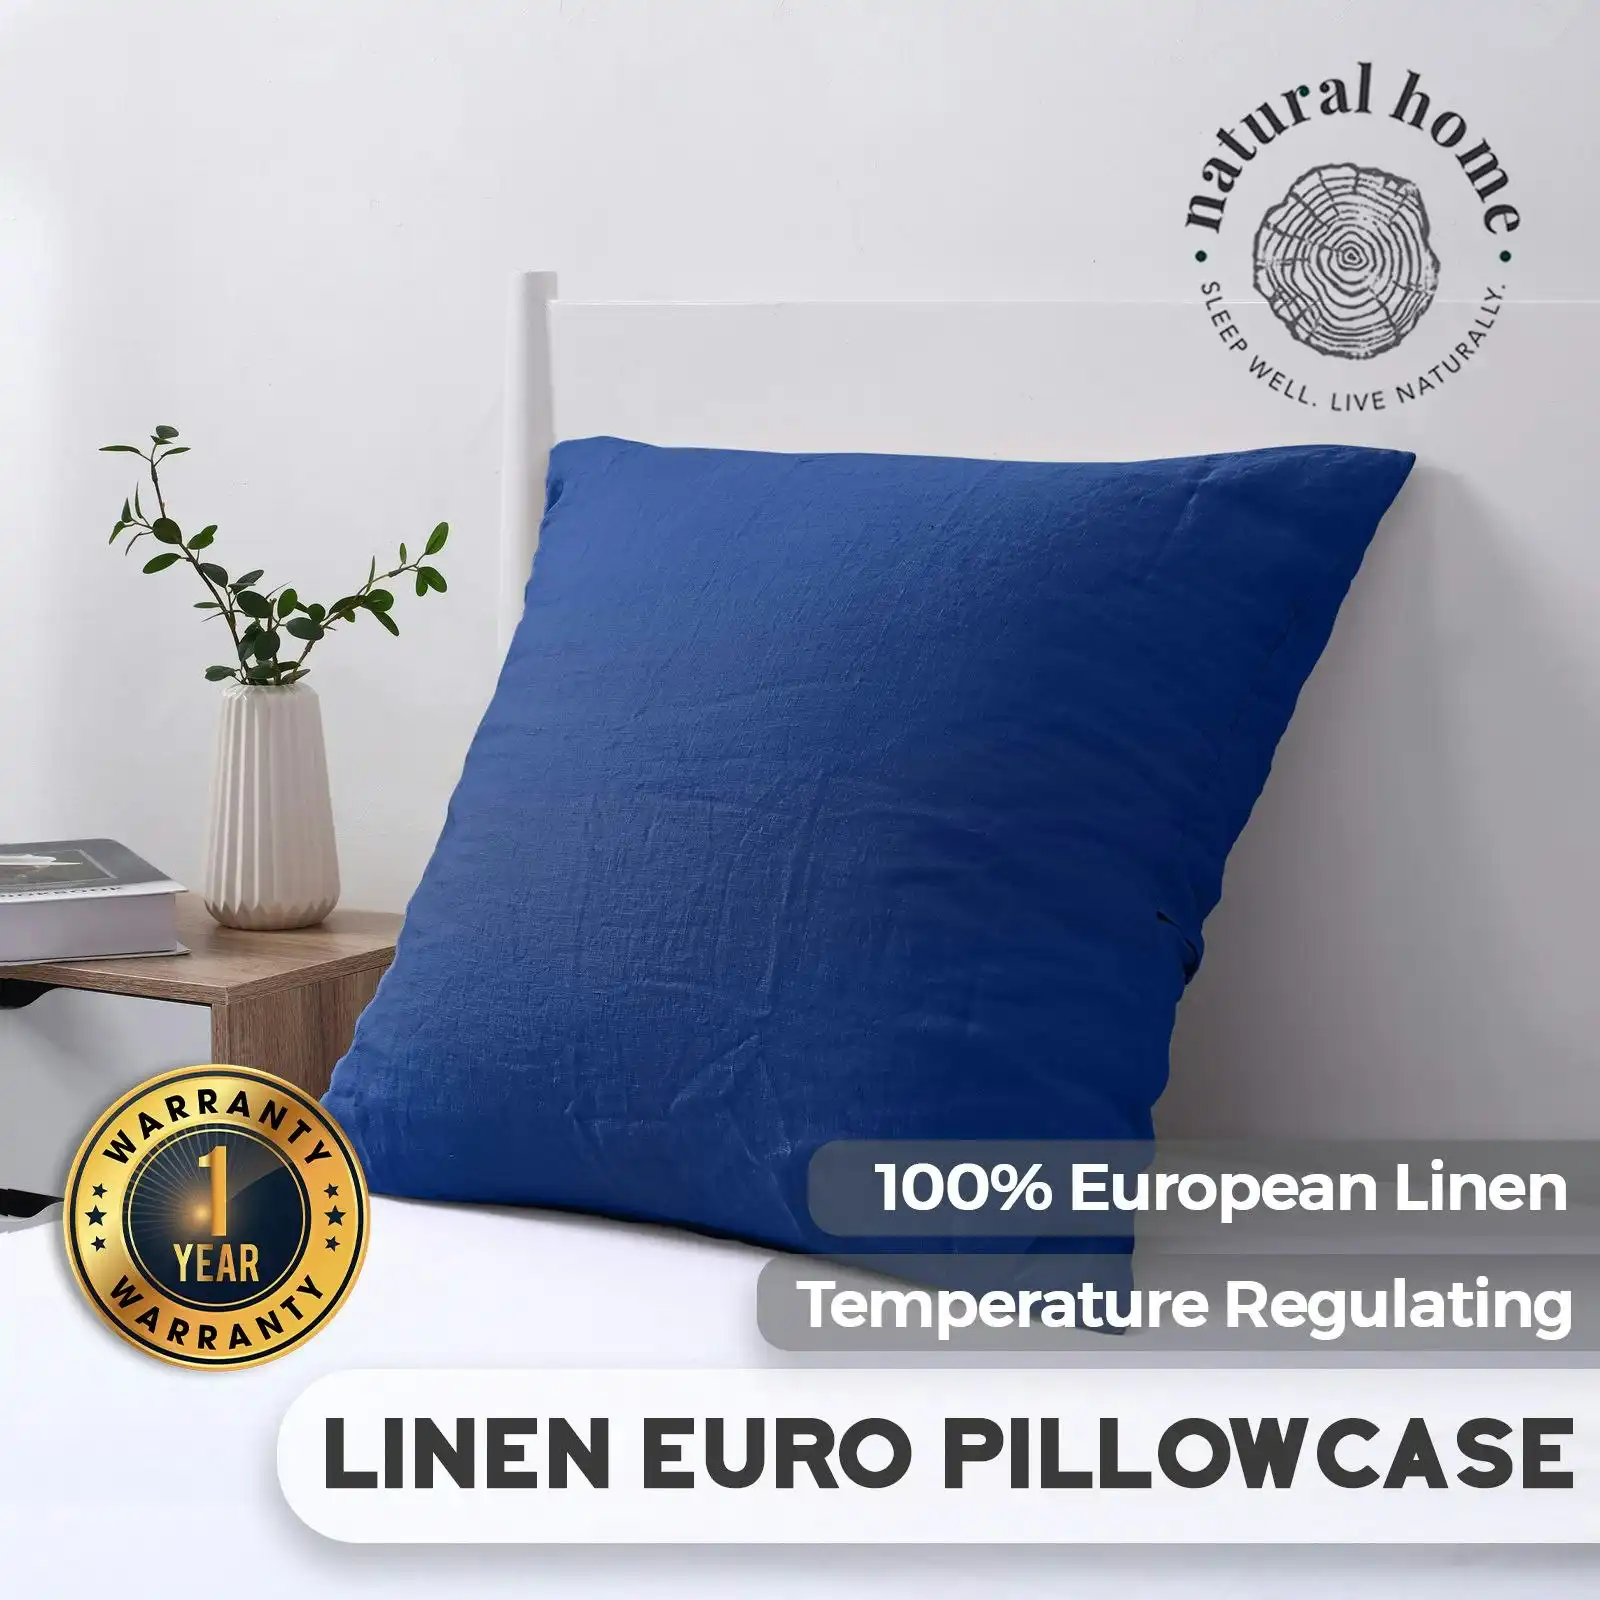 Natural Home 100% European Flax Linen Euro Pillowcase DEEP BLUE